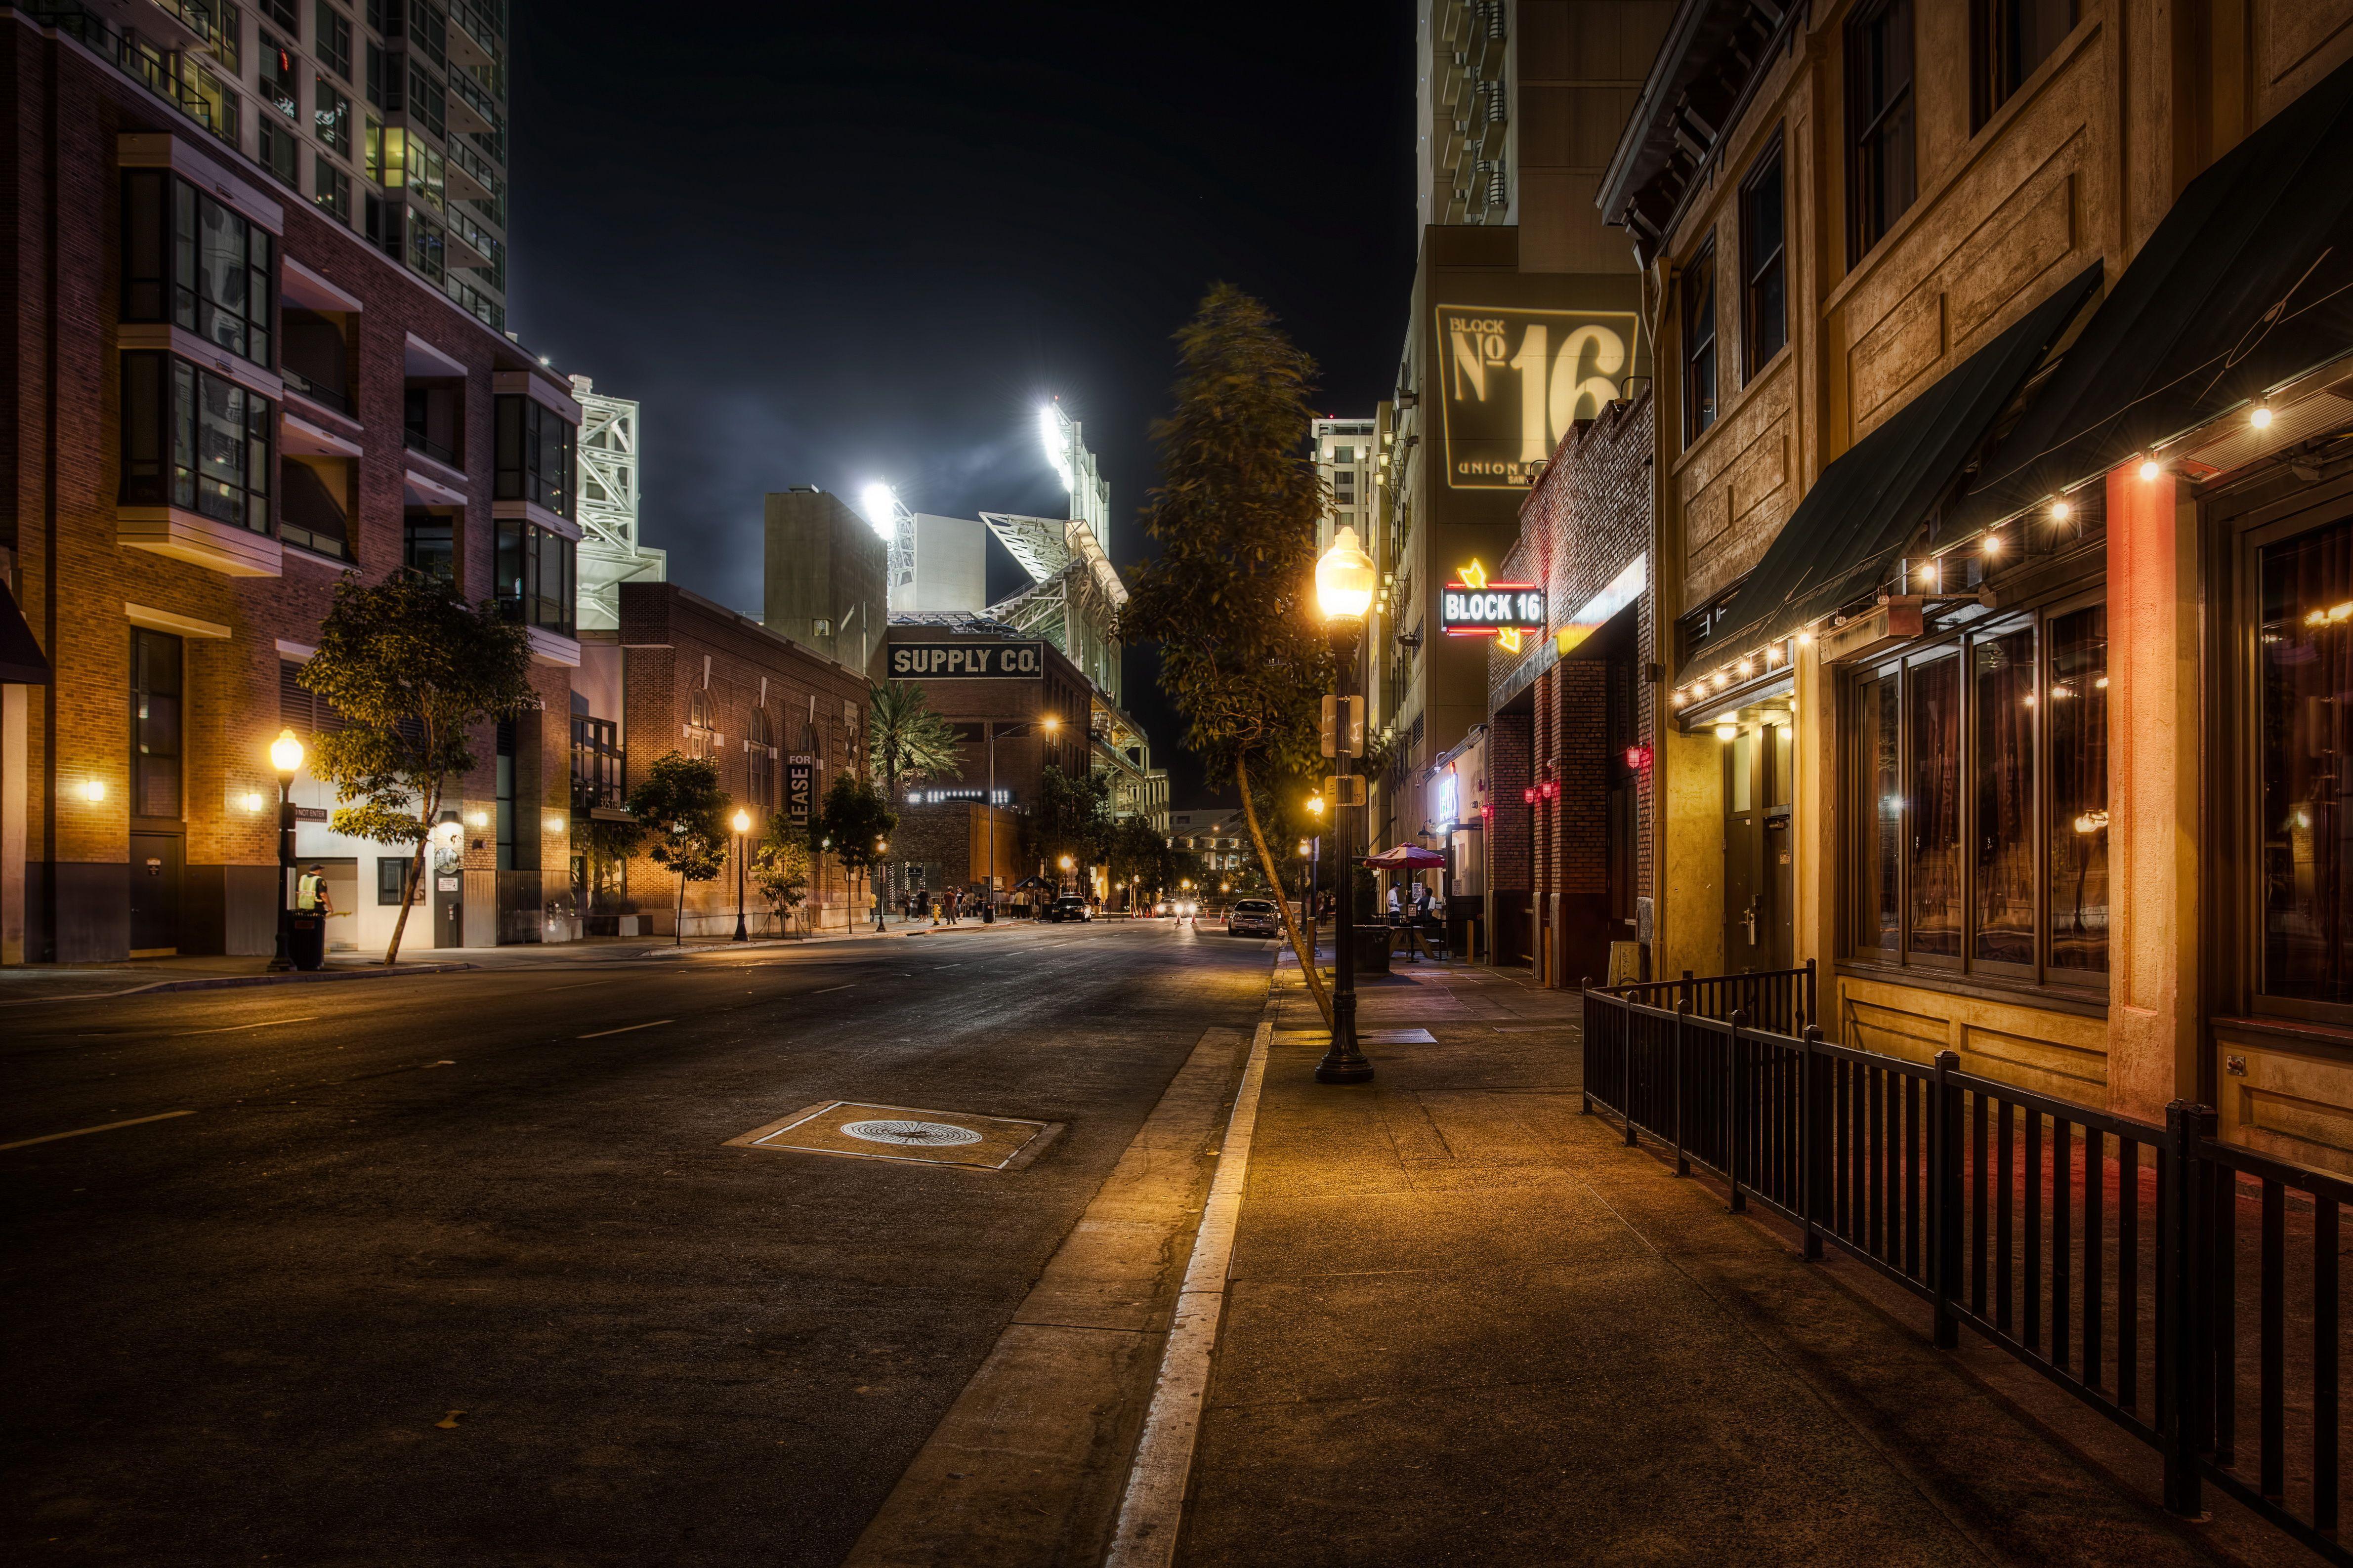 descriptive essay city street at night